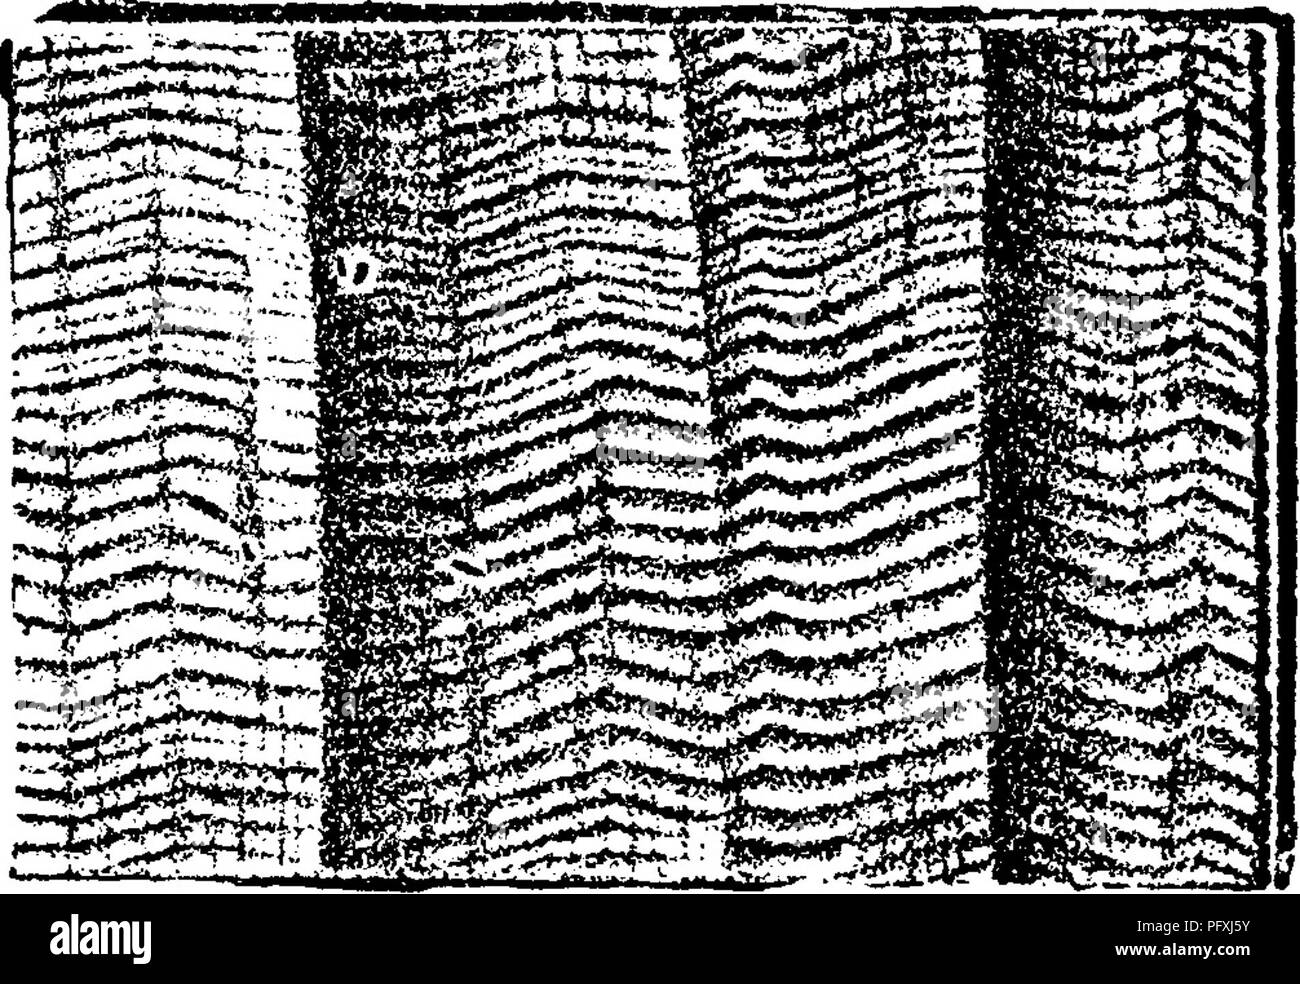 . Un dizionario dei fossili di Pennsylvania e gli Stati limitrofi denominato nelle relazioni e nei cataloghi del sondaggio ... Paleontologia. 23^pE^. Orthoceras caelamen (in parte uguale 0, nuntium^ e 0, crotahcm^ che vedere.) Hall, Pal. N. Y. 1879, pagina 298. pi. 113, f. 23, pi. 43, f. 15; dif- fering dalle altre due specie in orna- attuazione, la frequenza di squilli, ecc. Carni di montone- ville e Moravia, N. Y. Hamilton.-In Pennsylvania, andare? P. 235, Marshall's Creek, Monroe Co. F. &AMP; G. collezioni, Spec. 804-52, 804-63, in Hamilton led, VIII c Orthoceras capitolinum, SnfFord Geol. Tennessee 1869, pagina. Pl Foto Stock